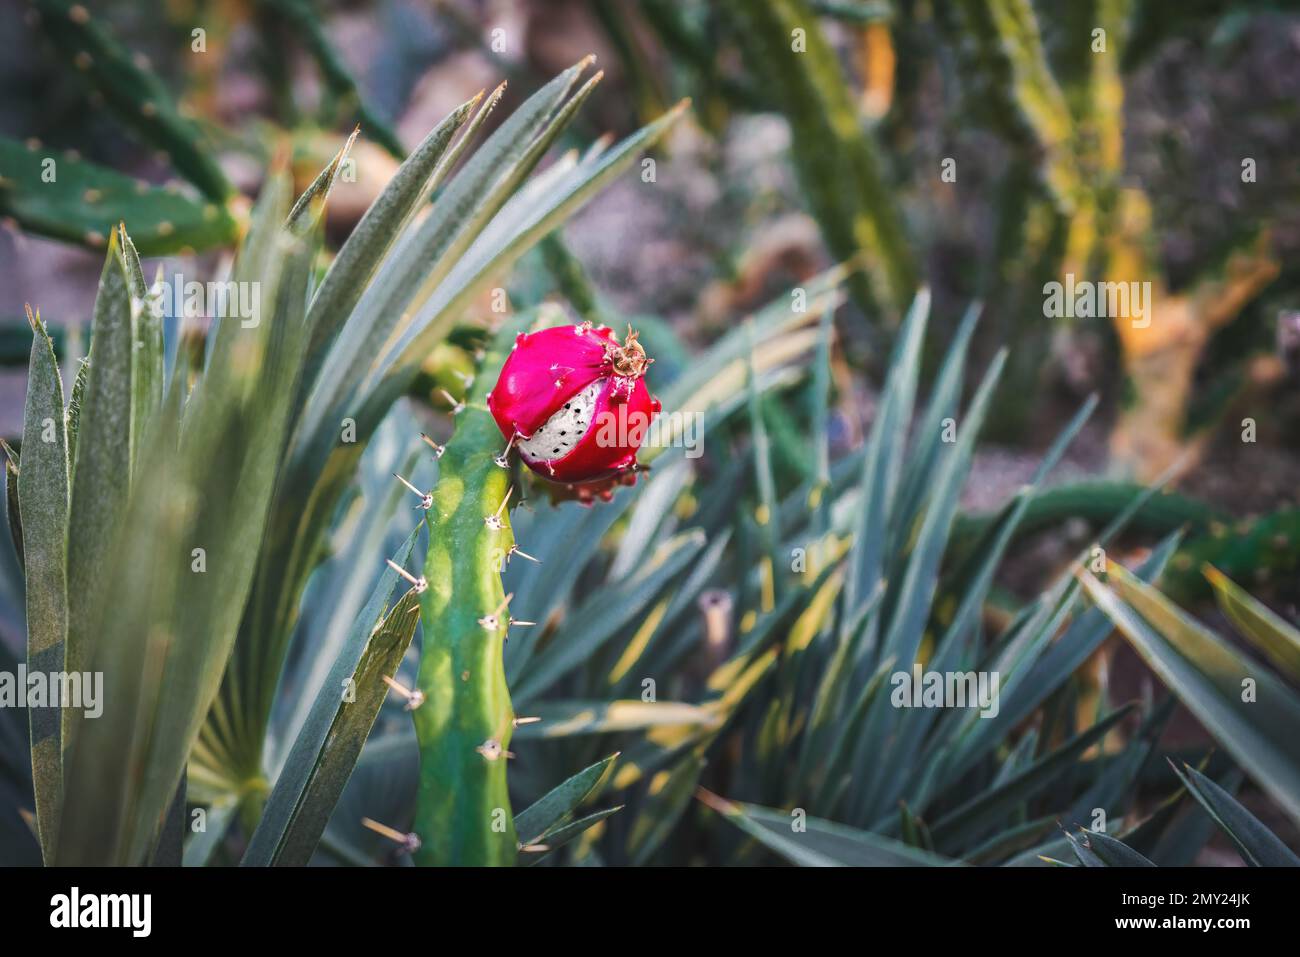 Pink Cactus fruit similar to Pitaya Stock Photo